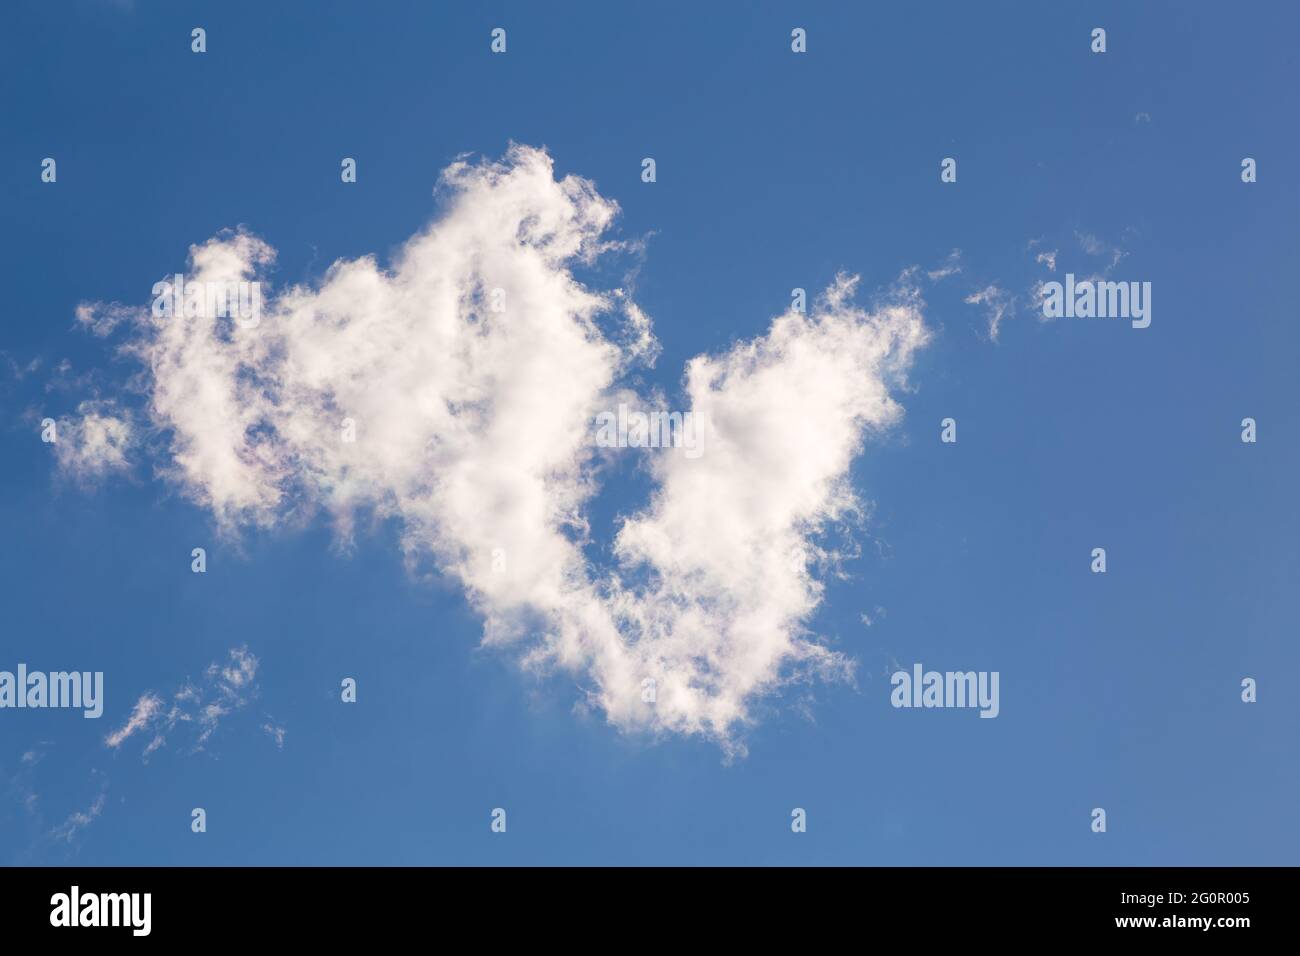 Schöner blauer Himmel mit weißer Wolke. Himmelspanorama für Bildschirmschoner, Postkarten, Kalender, Präsentationen. Warmer Sommertag. Stockfoto